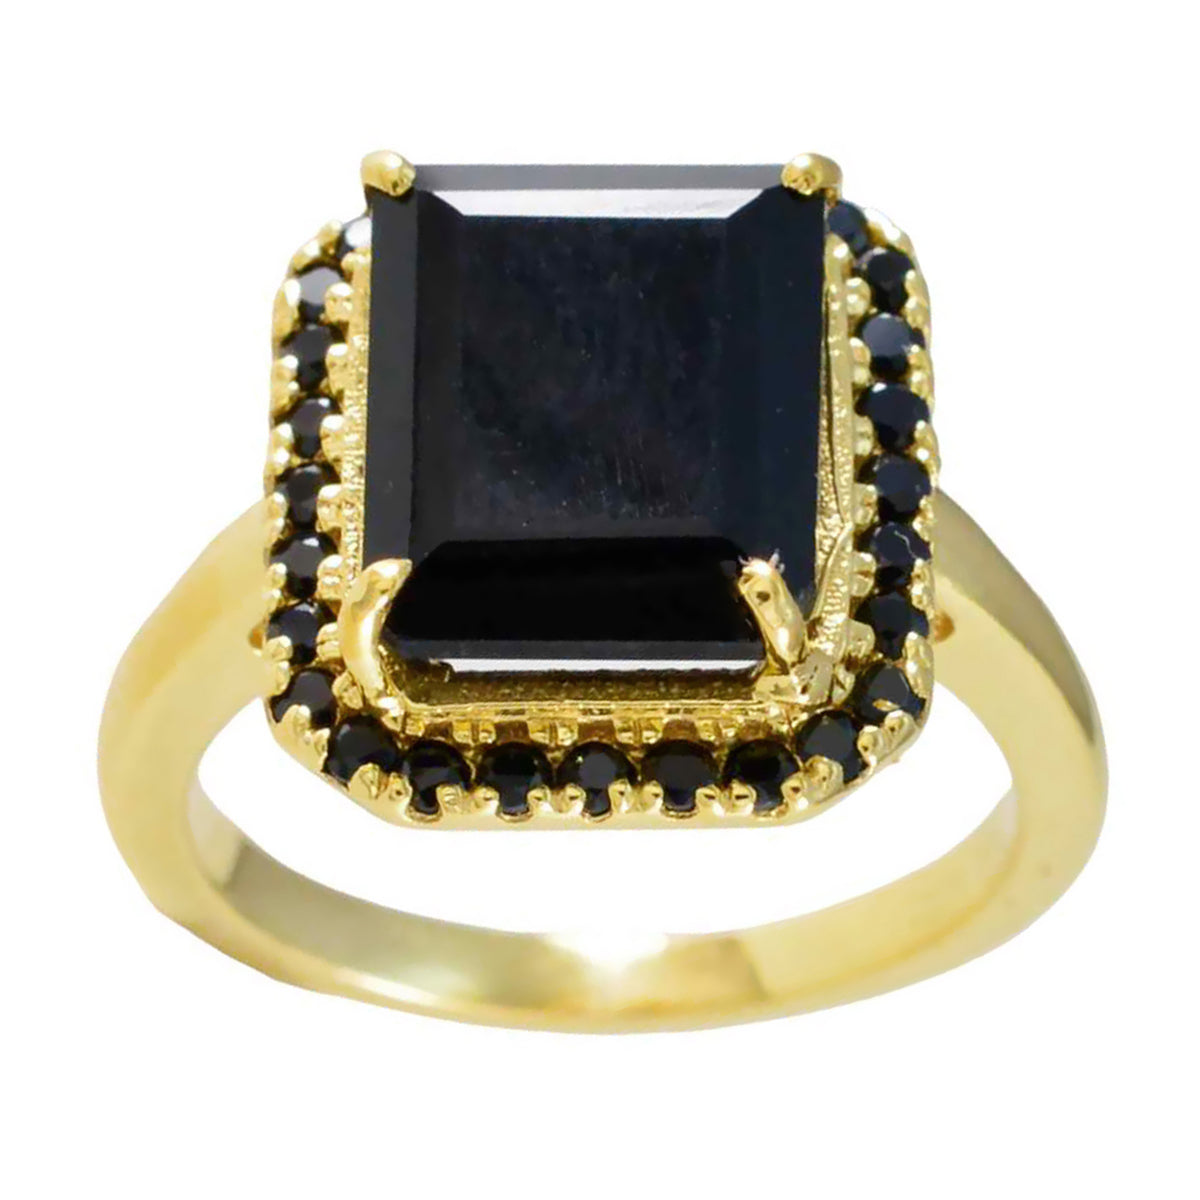 Riyo magnifique bague en argent avec placage en or jaune pierre d'onyx noir forme octogonale sertissage bijoux anciens bague de pâques